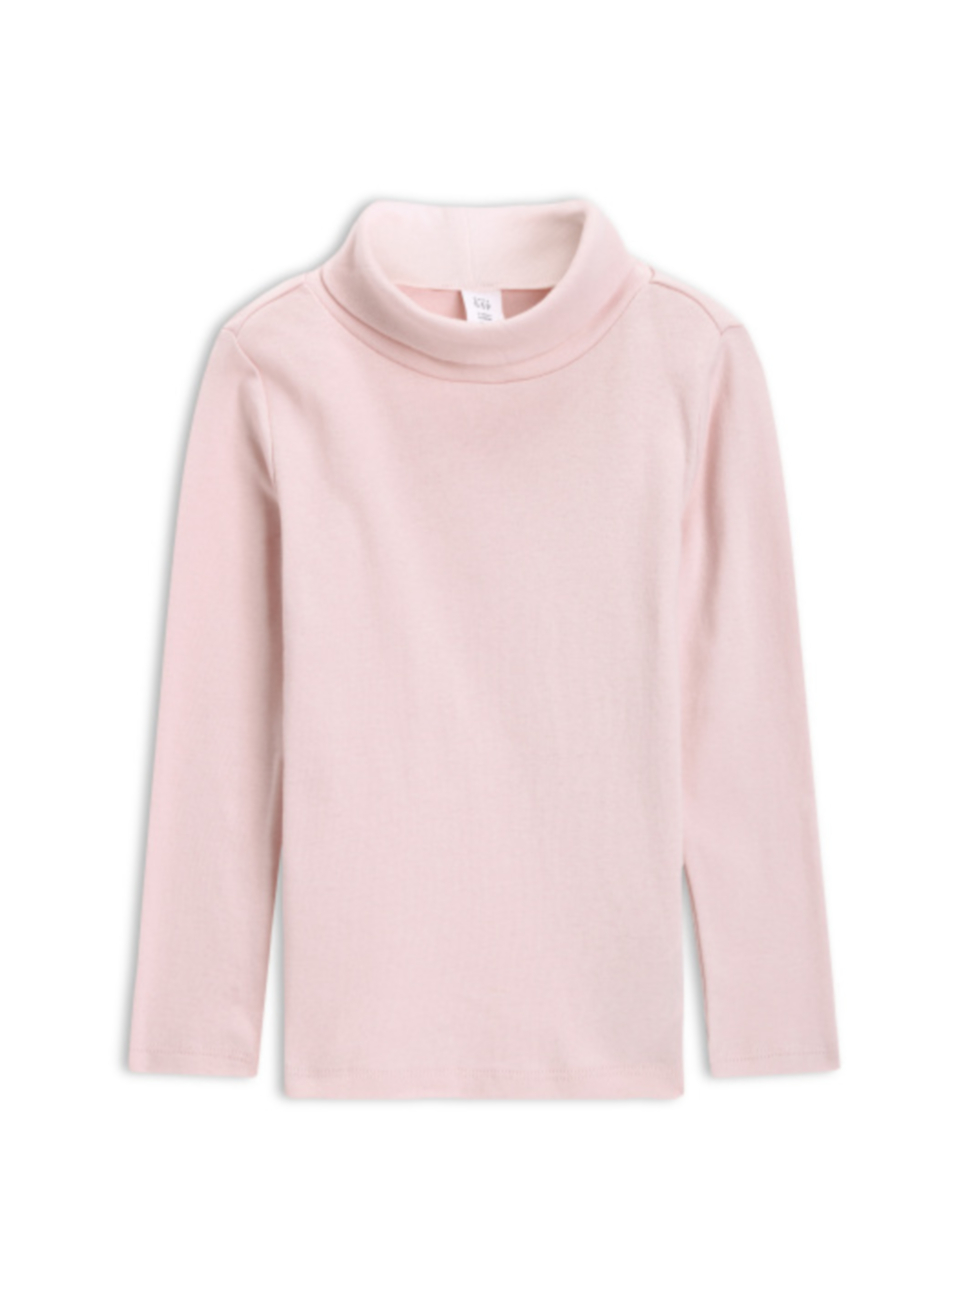 女幼童裝|舒適長袖條紋T恤-春天粉色